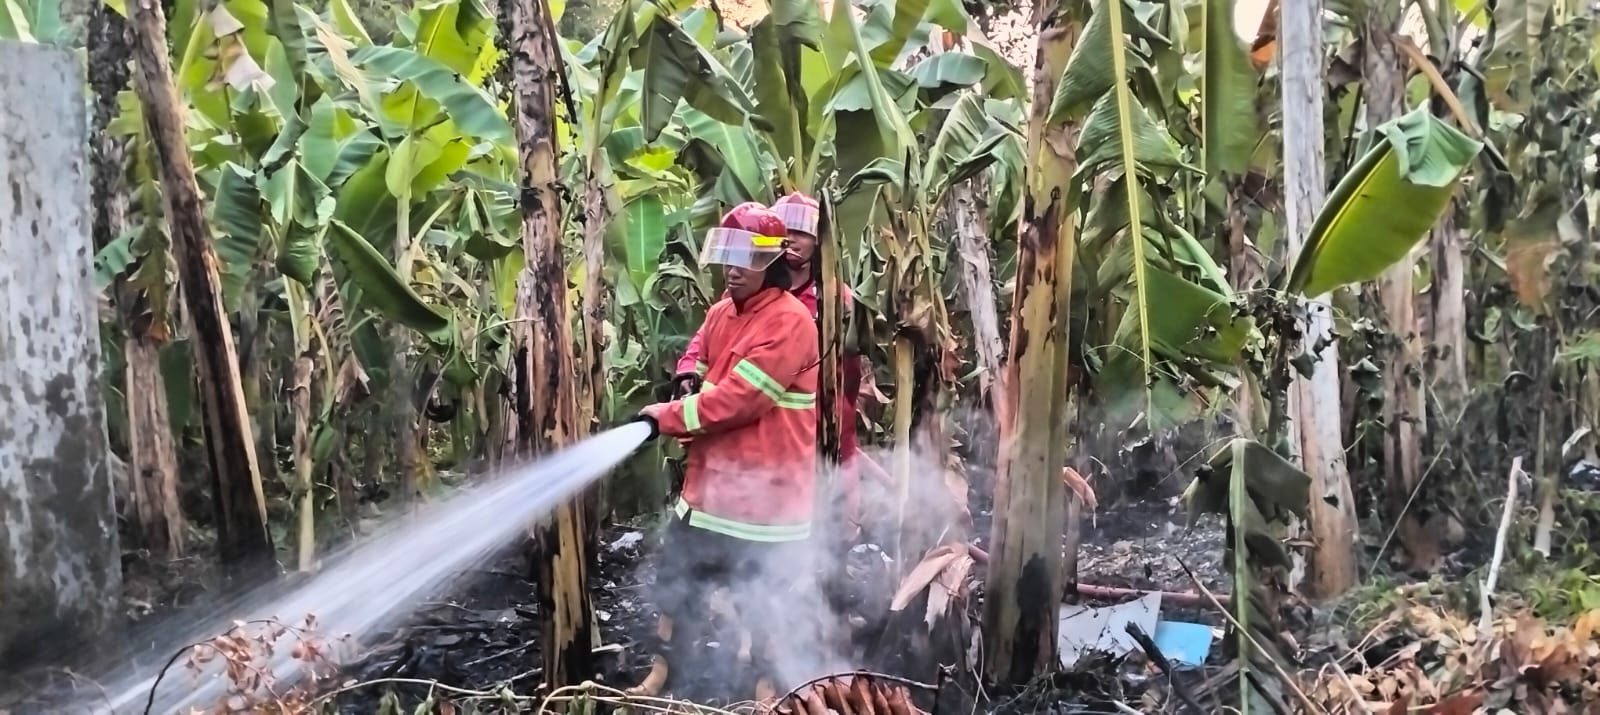 Kebakaran Lahan Kosong Kembali Terjadi di Cilacap, Kasus Kebakaran di Cilacap Terus Bertambah